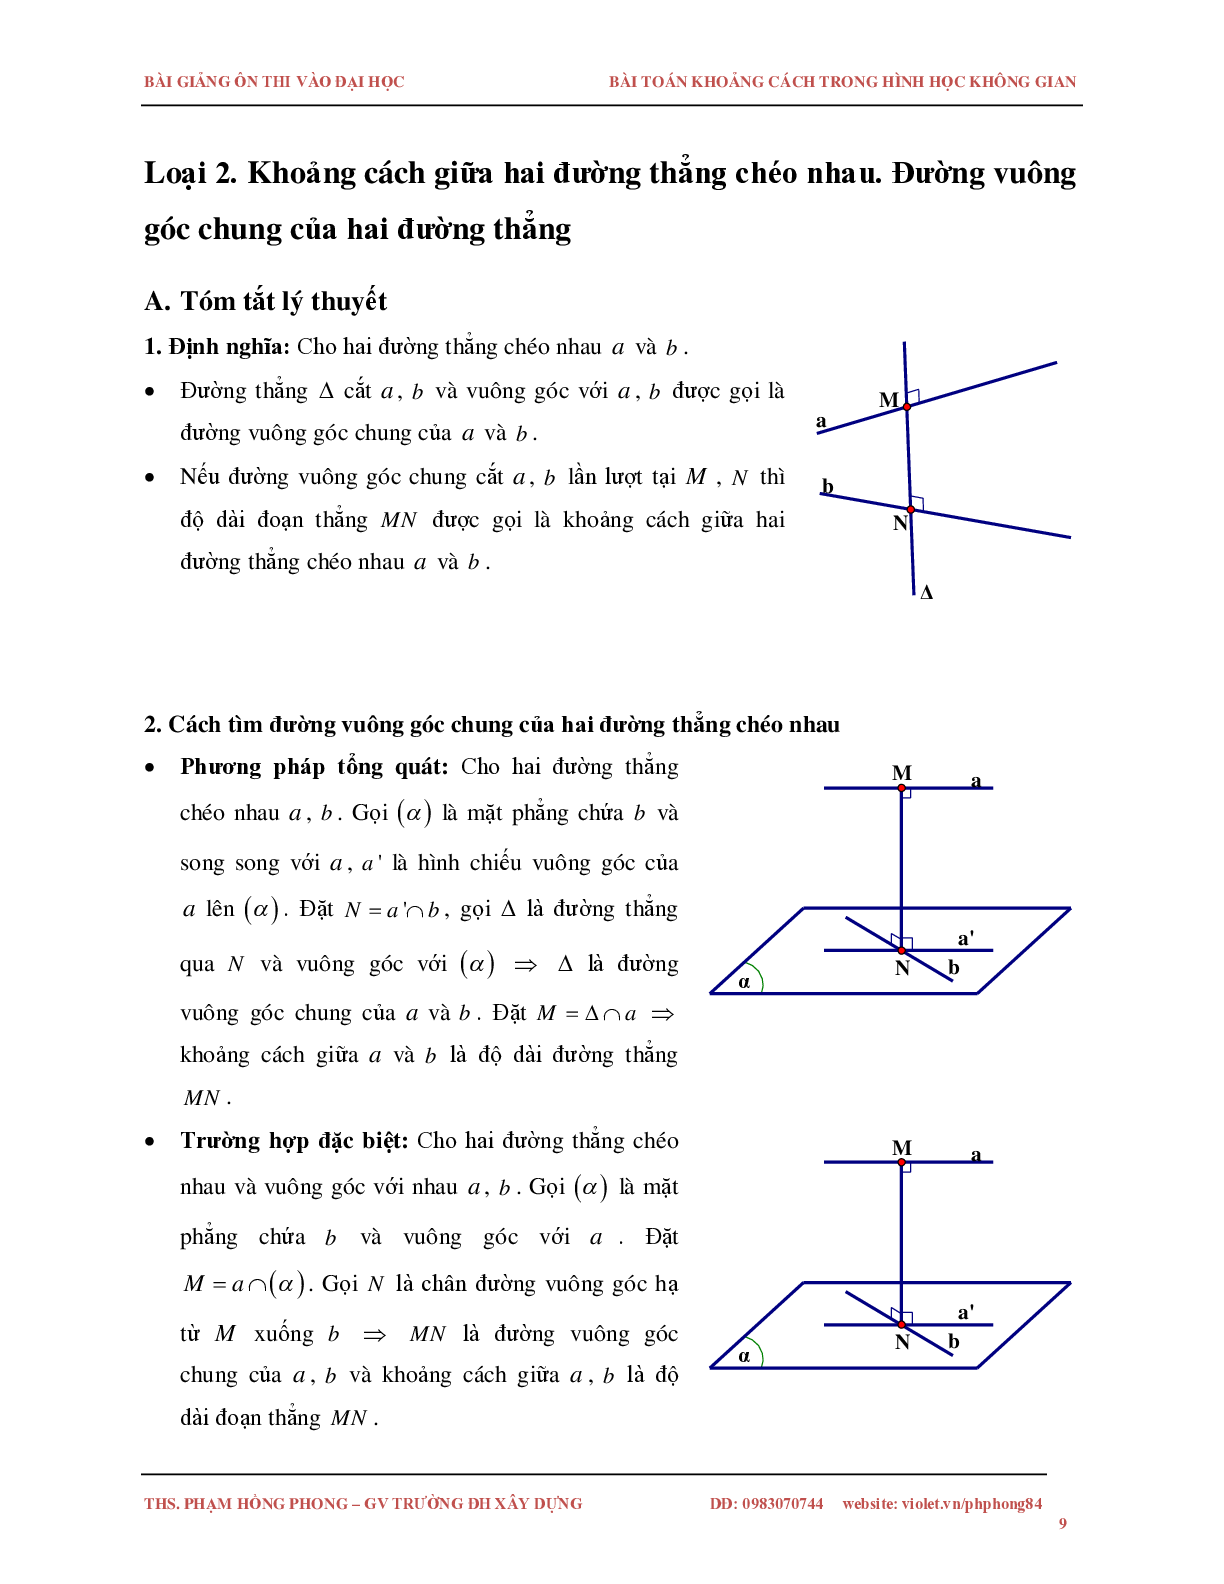 Bài toán về khoảng cách trong không gian (trang 9)